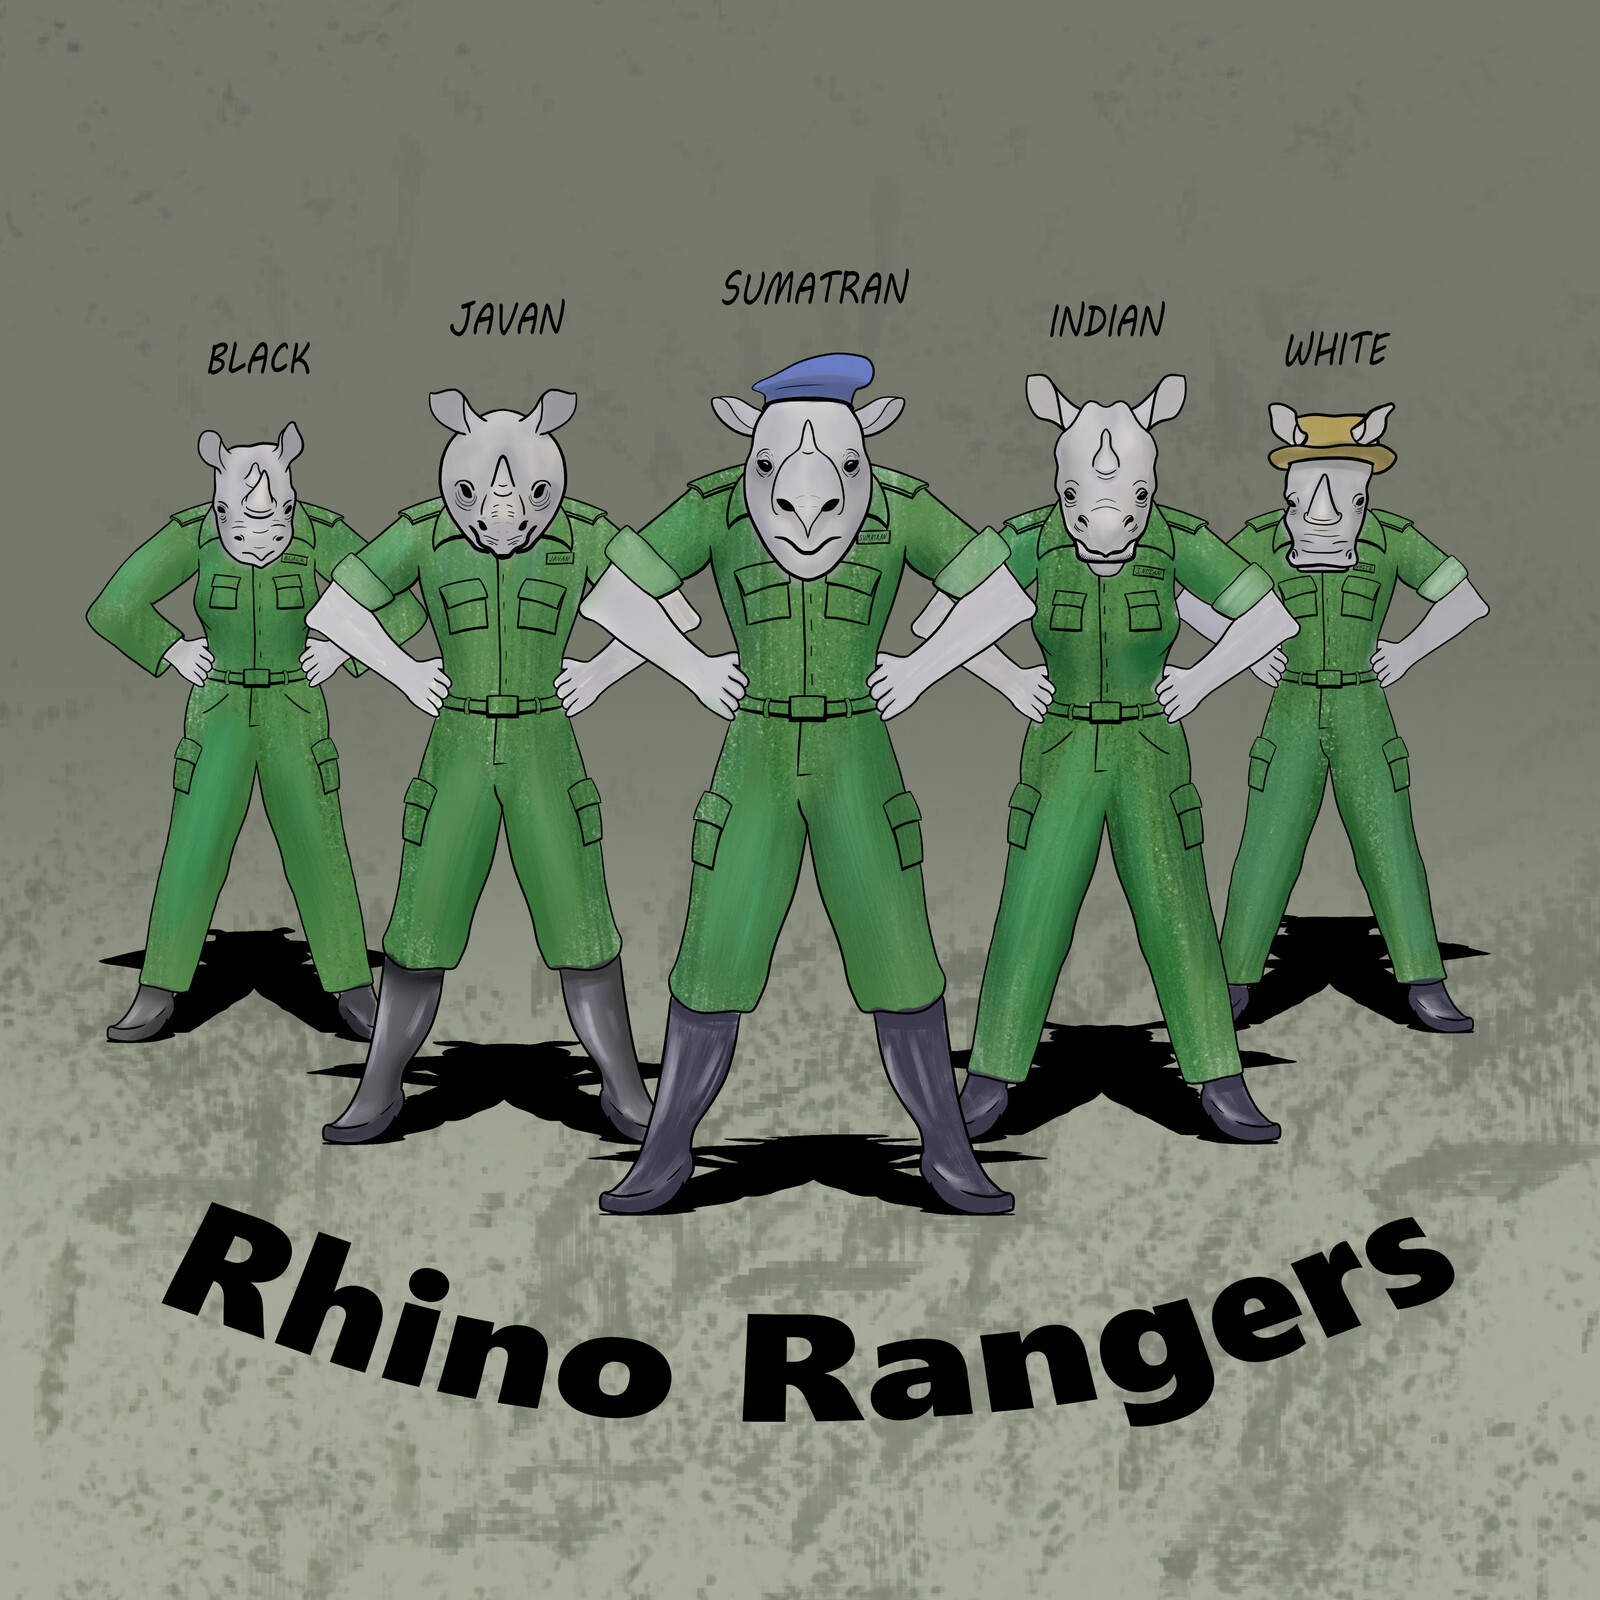 Rhino Rangers